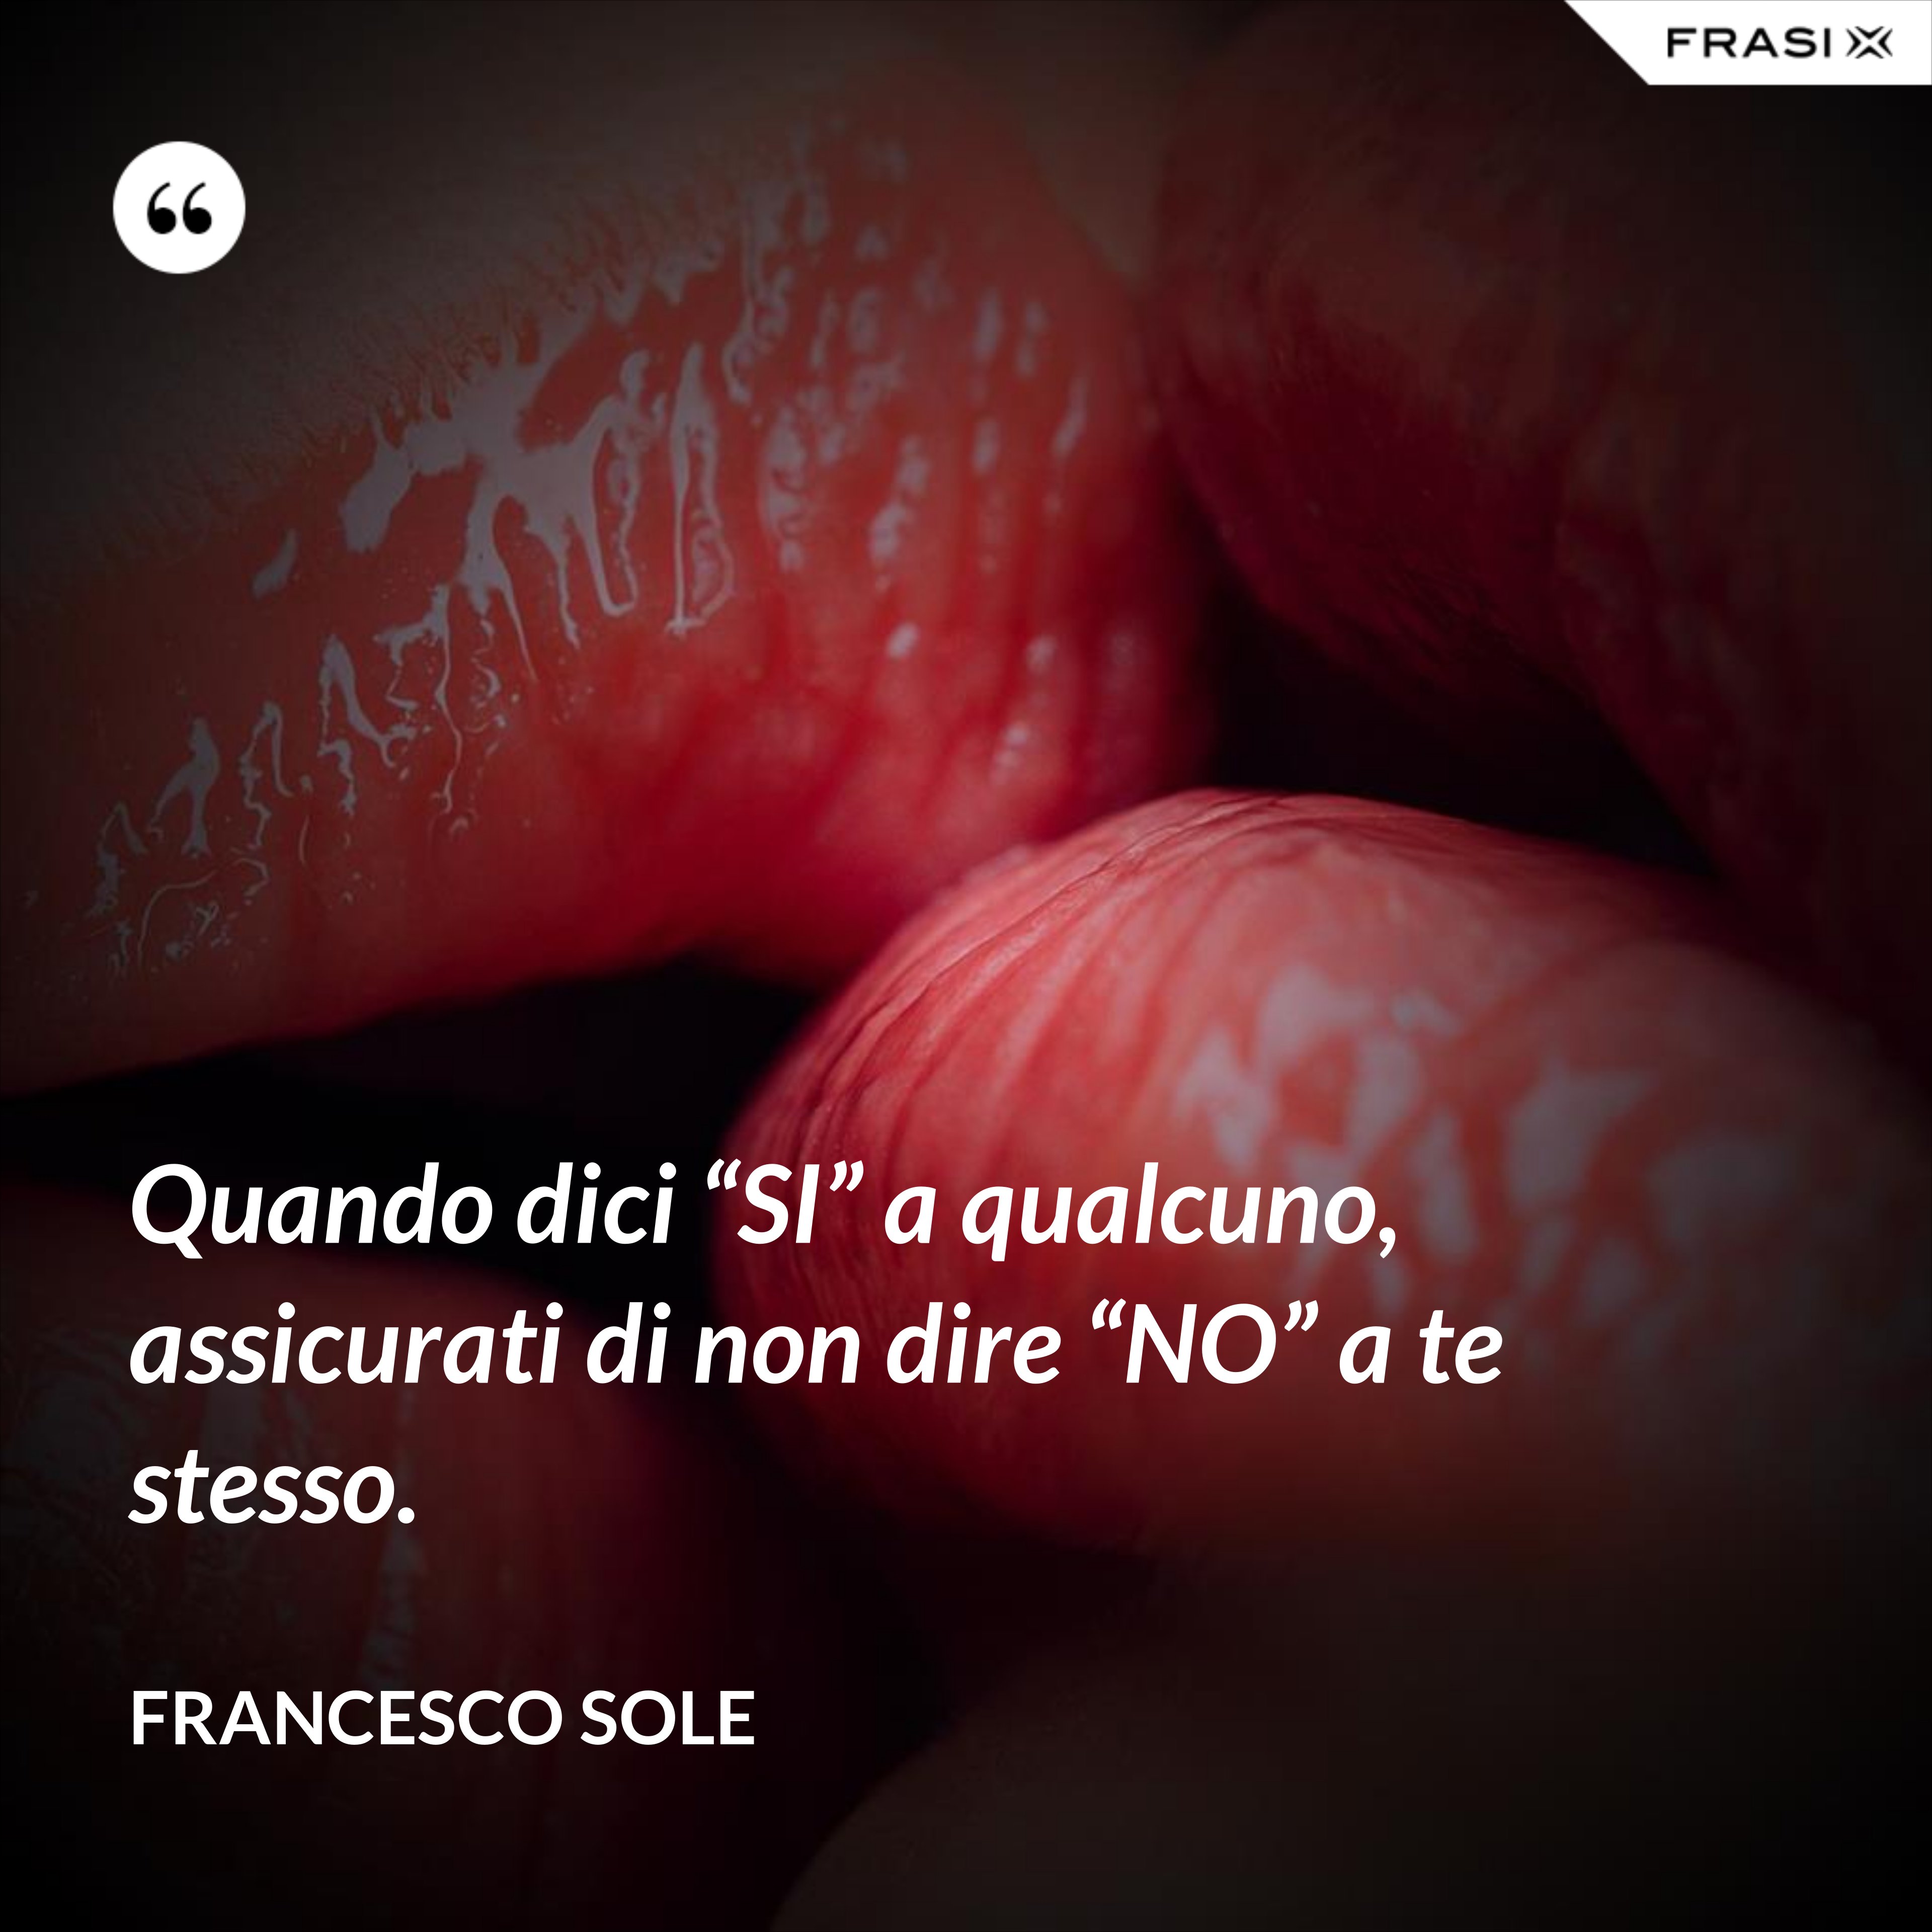 Quando dici “SI” a qualcuno, assicurati di non dire “NO” a te stesso. - Francesco Sole